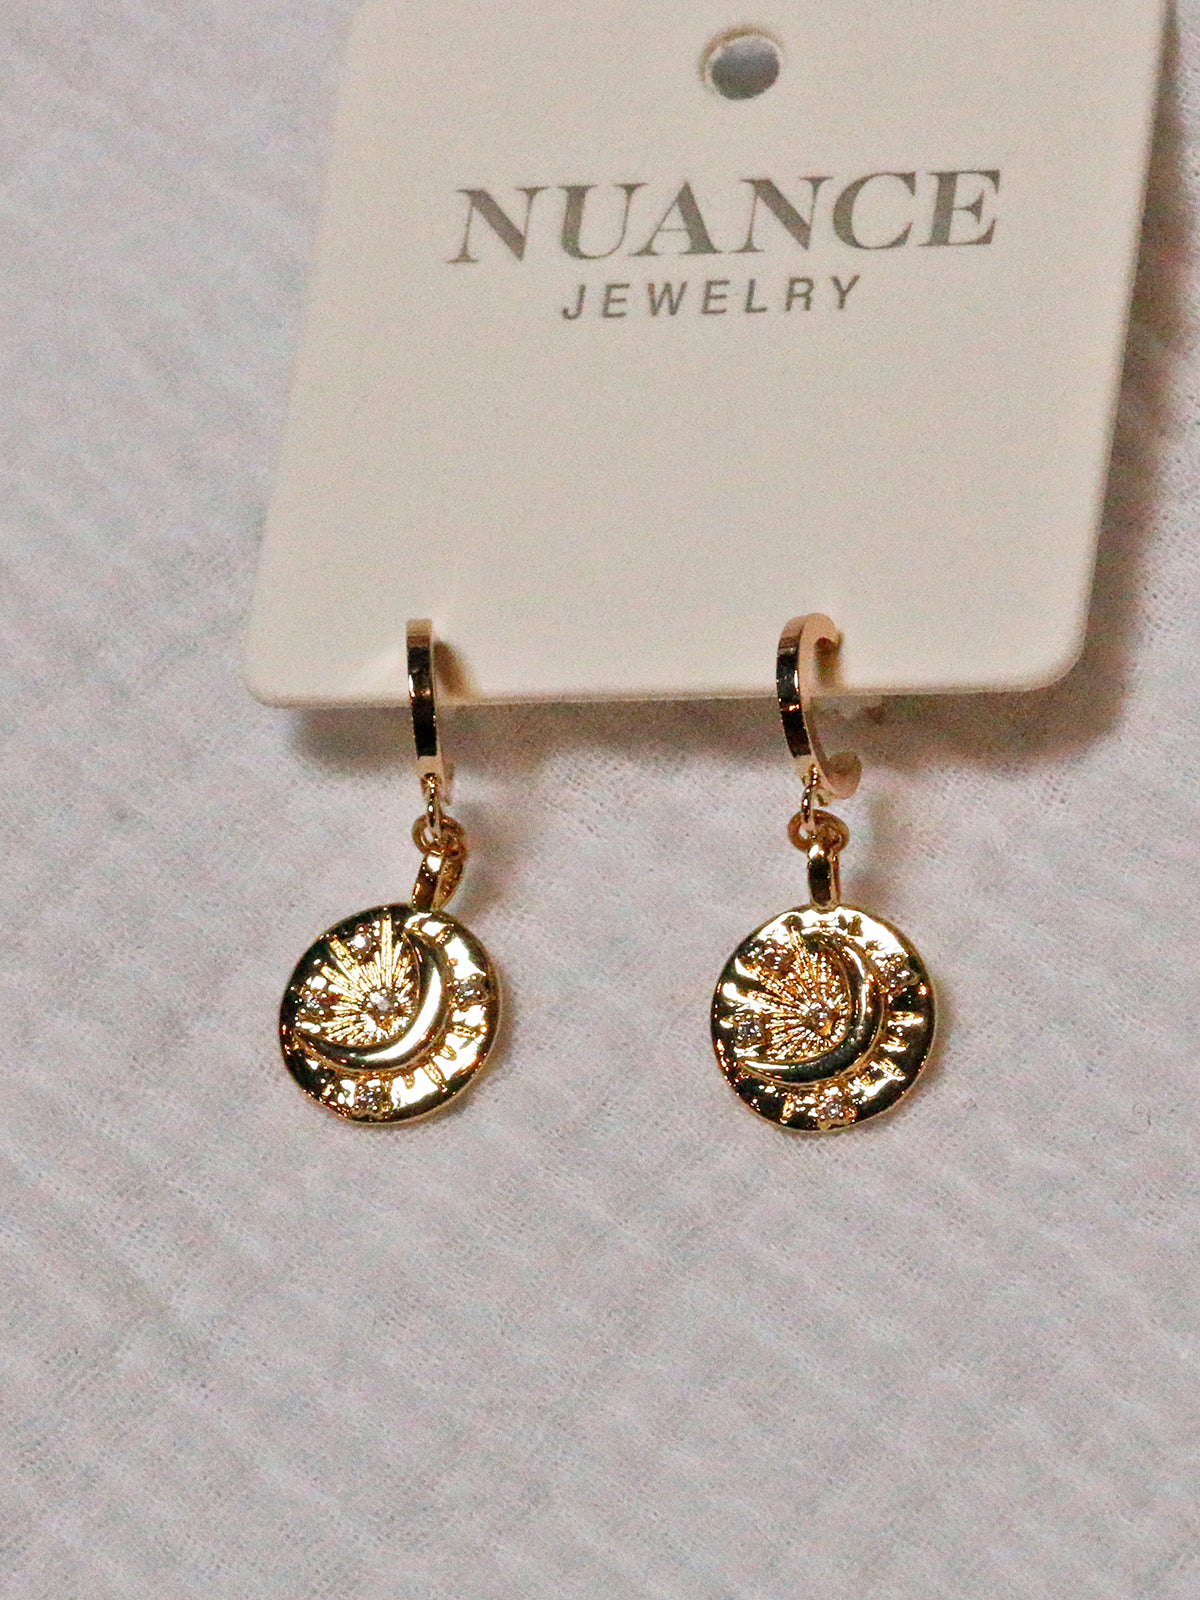 Nuance Wanderlust Earrings - Moon Coin